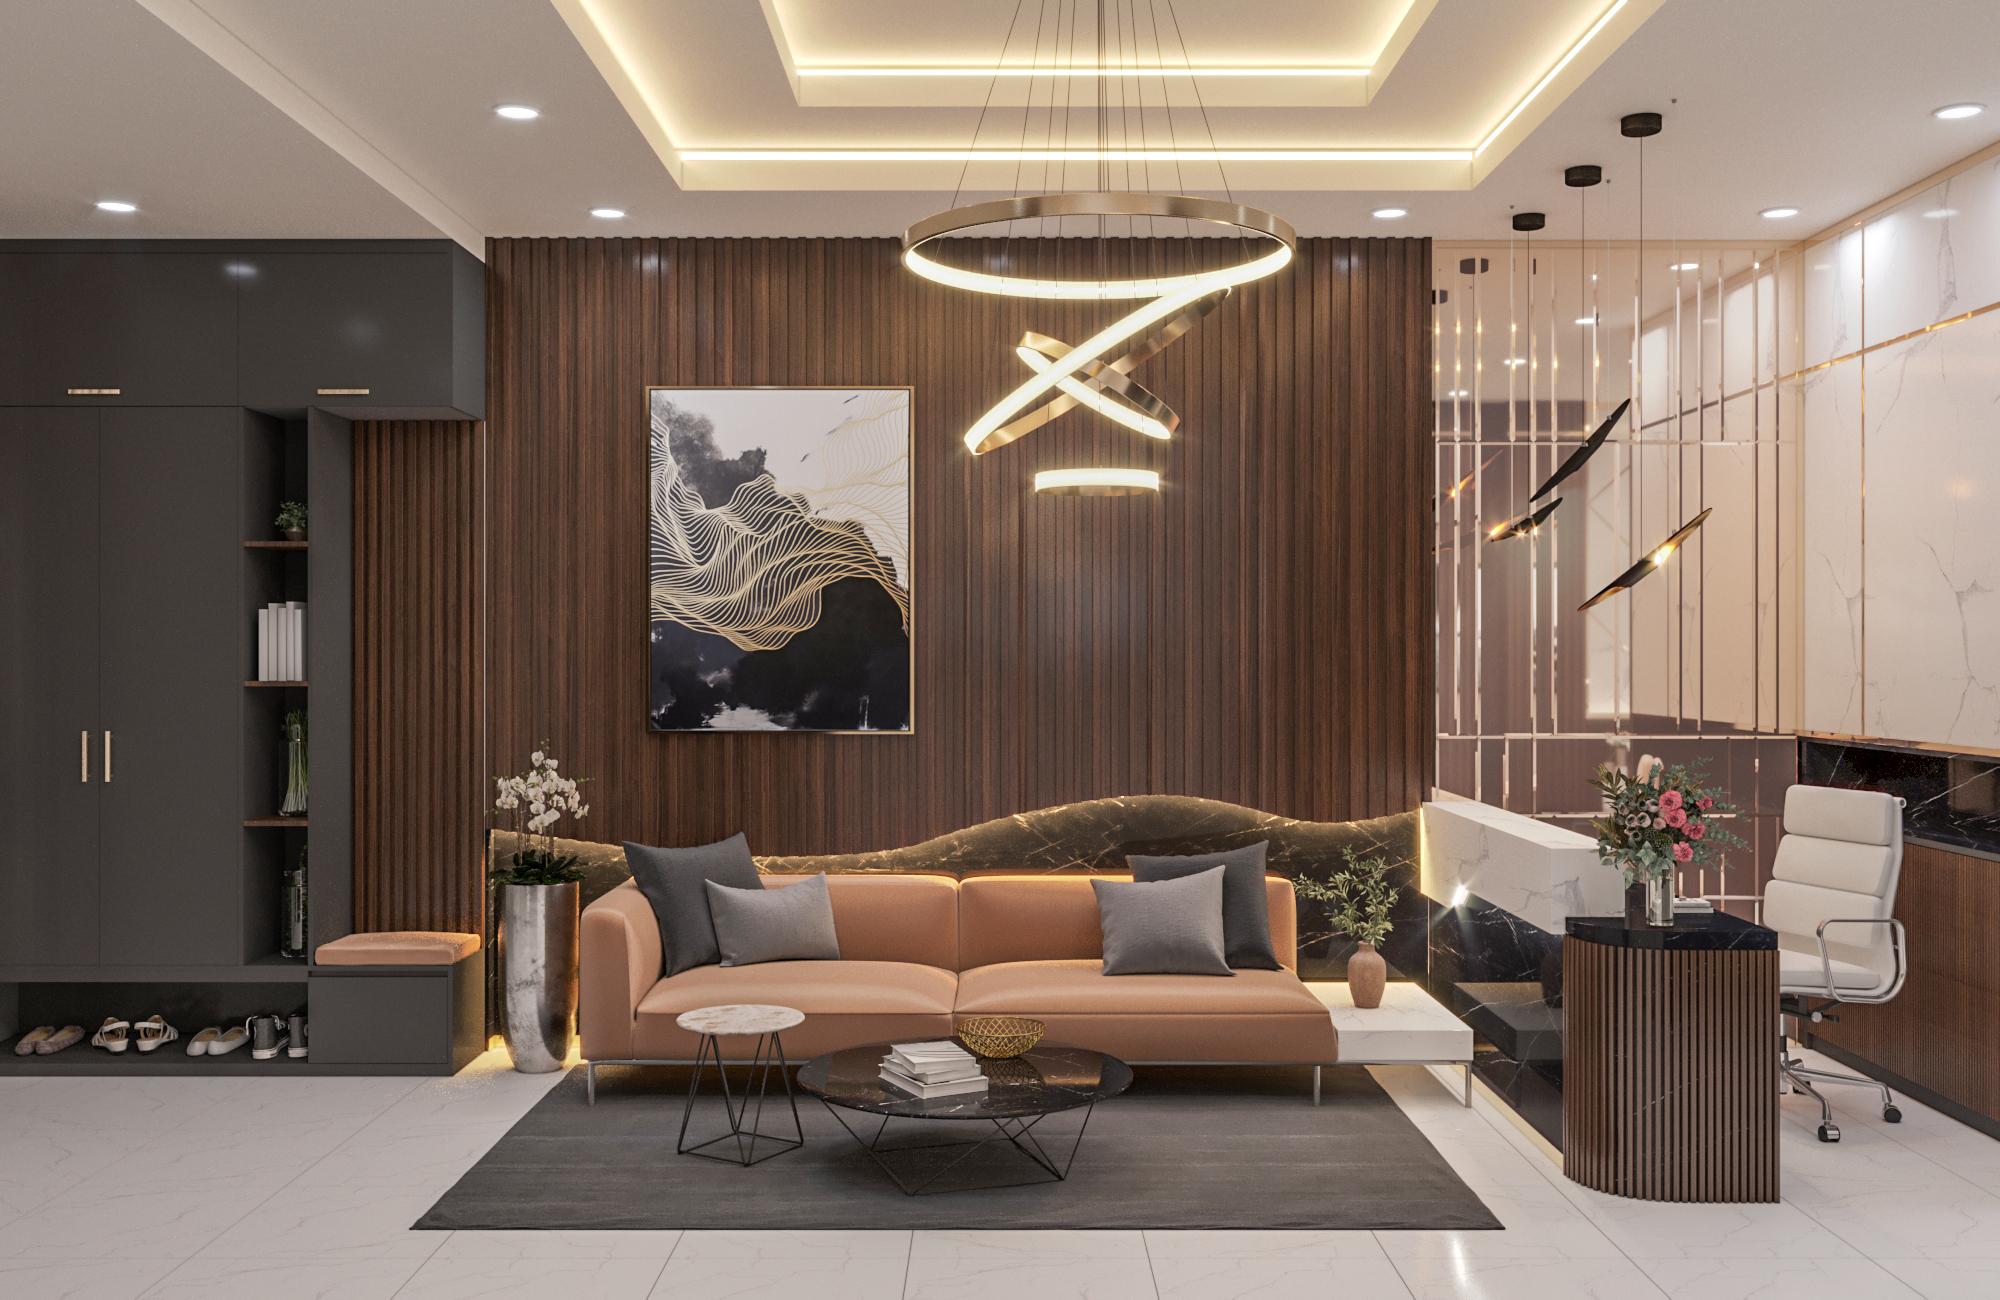 15 mẫu thiết kế căn hộ Studio đẹp hiện đại và ấn tượng nhất